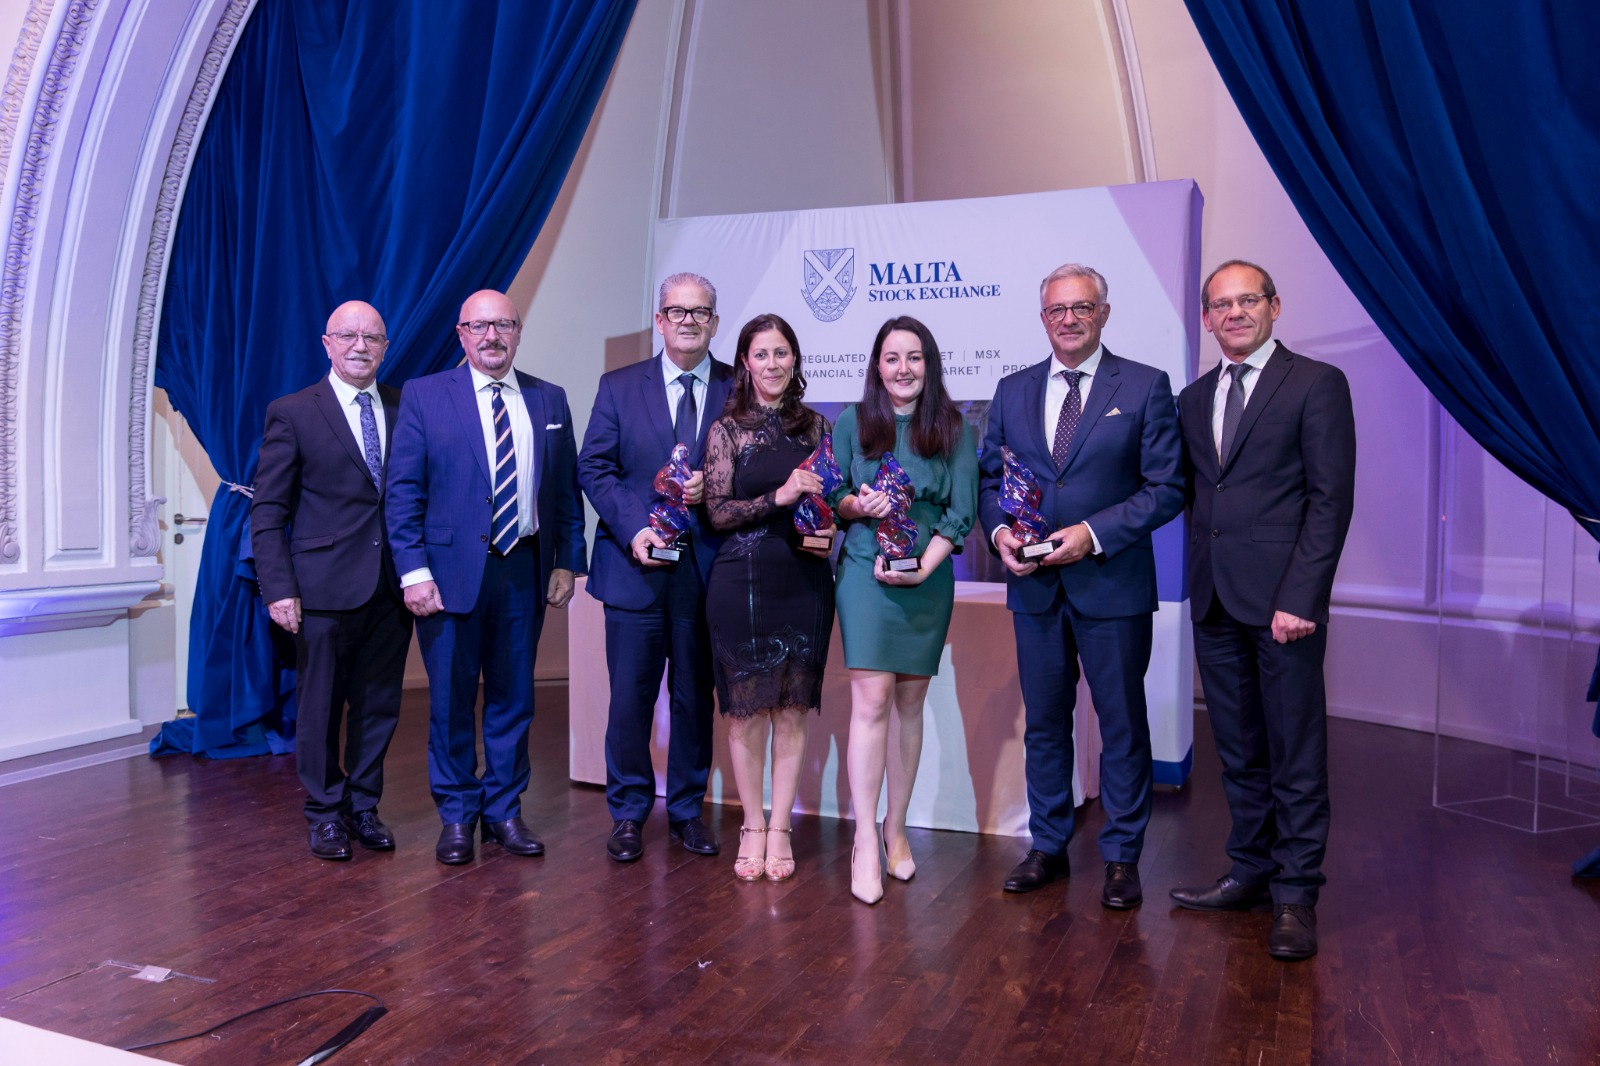 Malta Stock Exchange holds annual awards dinner